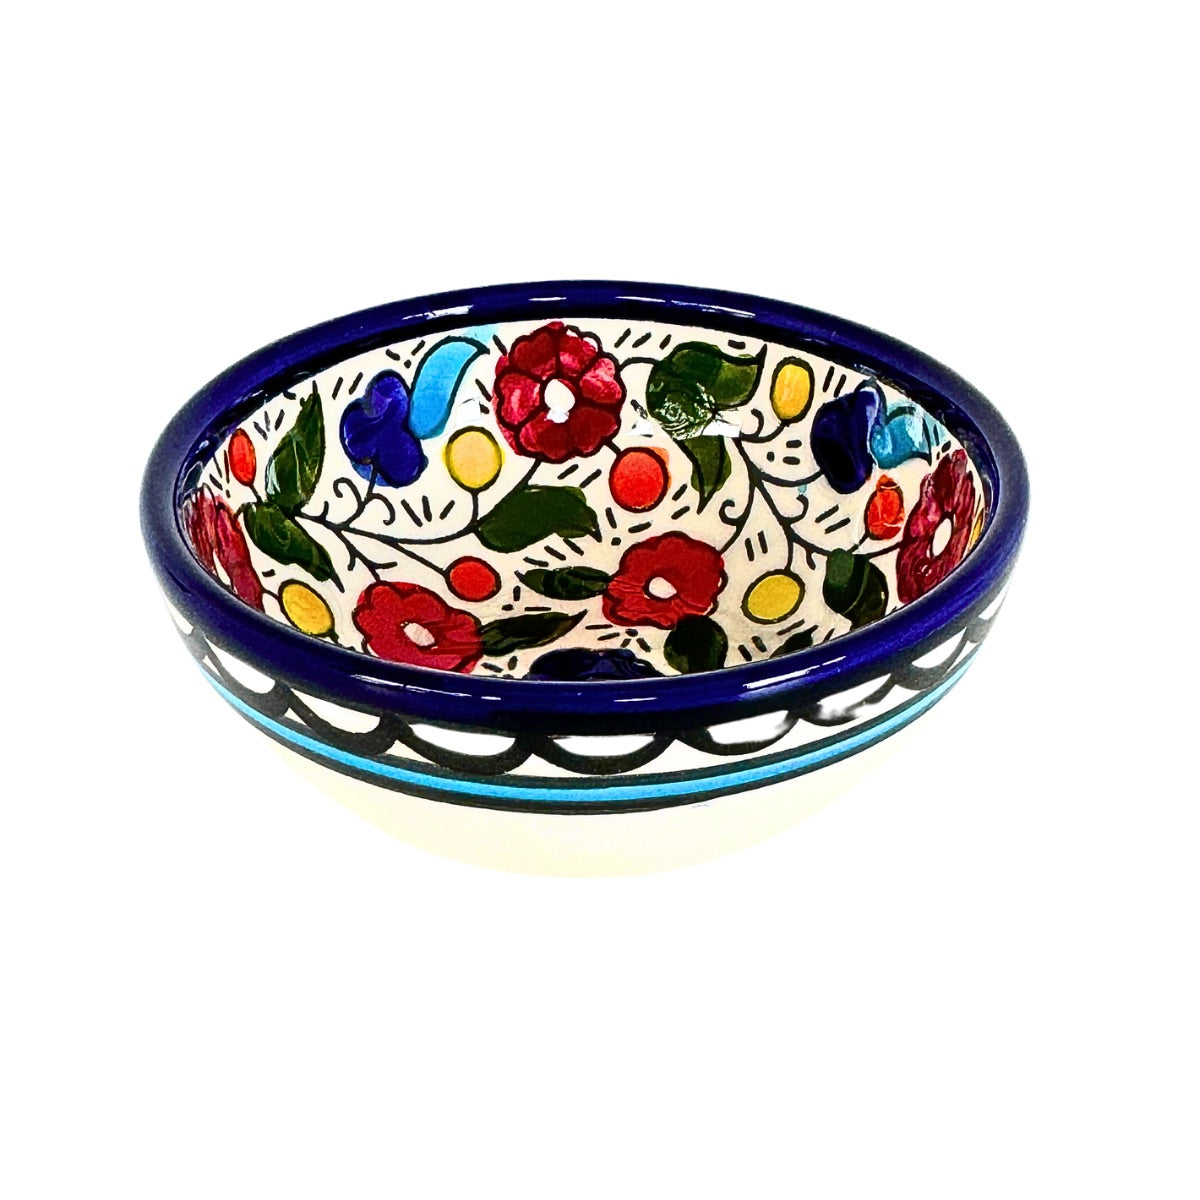 Ceramic "Dipping" Bowl (3.5”) - Classic Multicolor